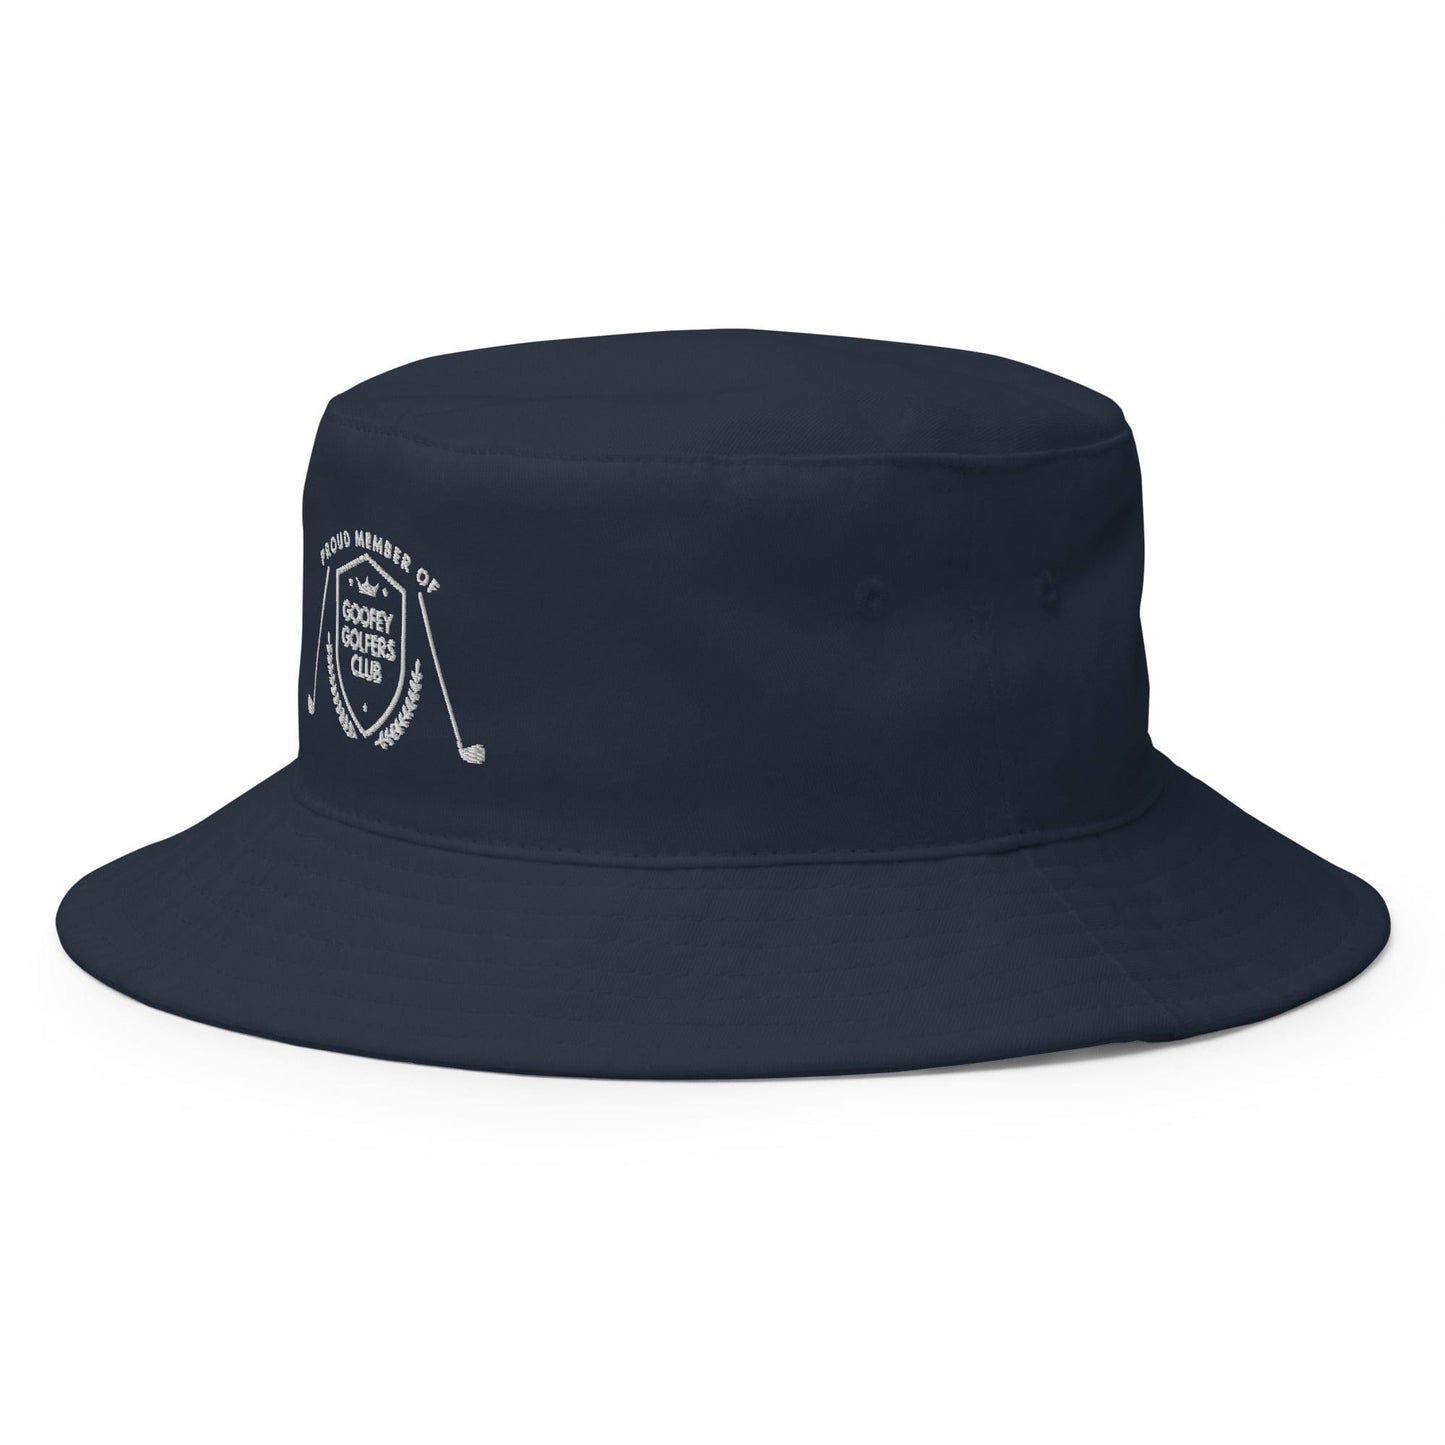 Funny Golfer Gifts  Bucket Hat Goofey Golfers Club Bucket Hat